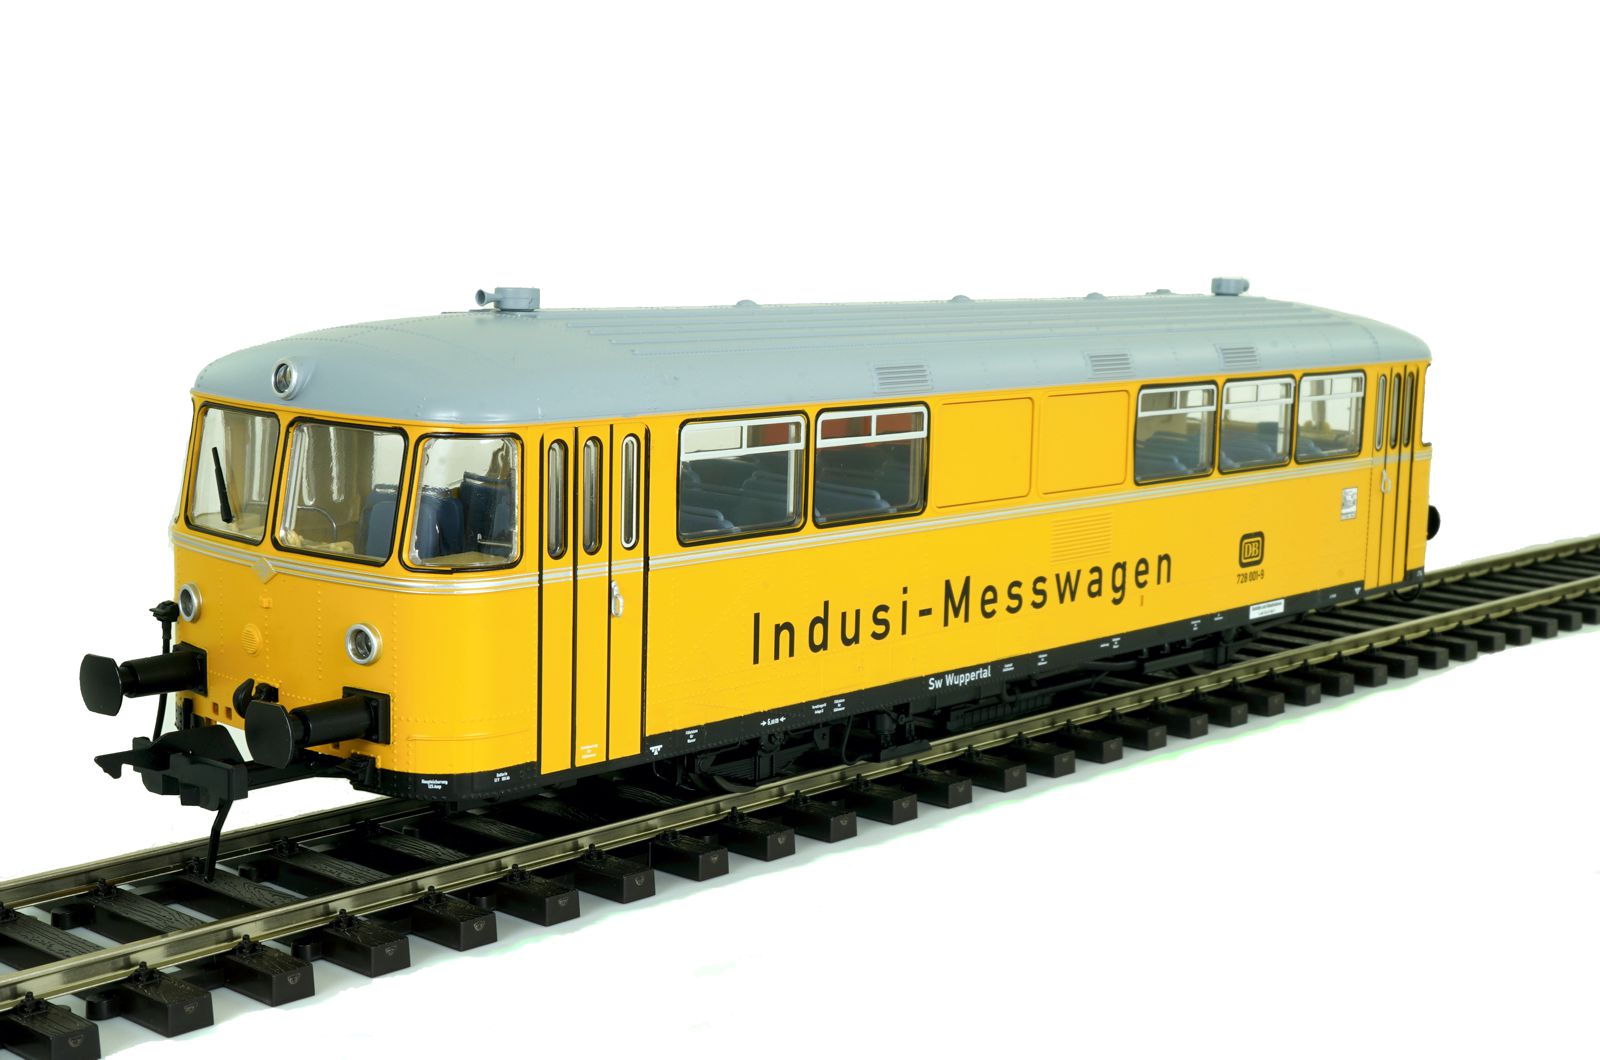 Editionmod. Schienenbus VT 98 "Indusi-Messwagen"